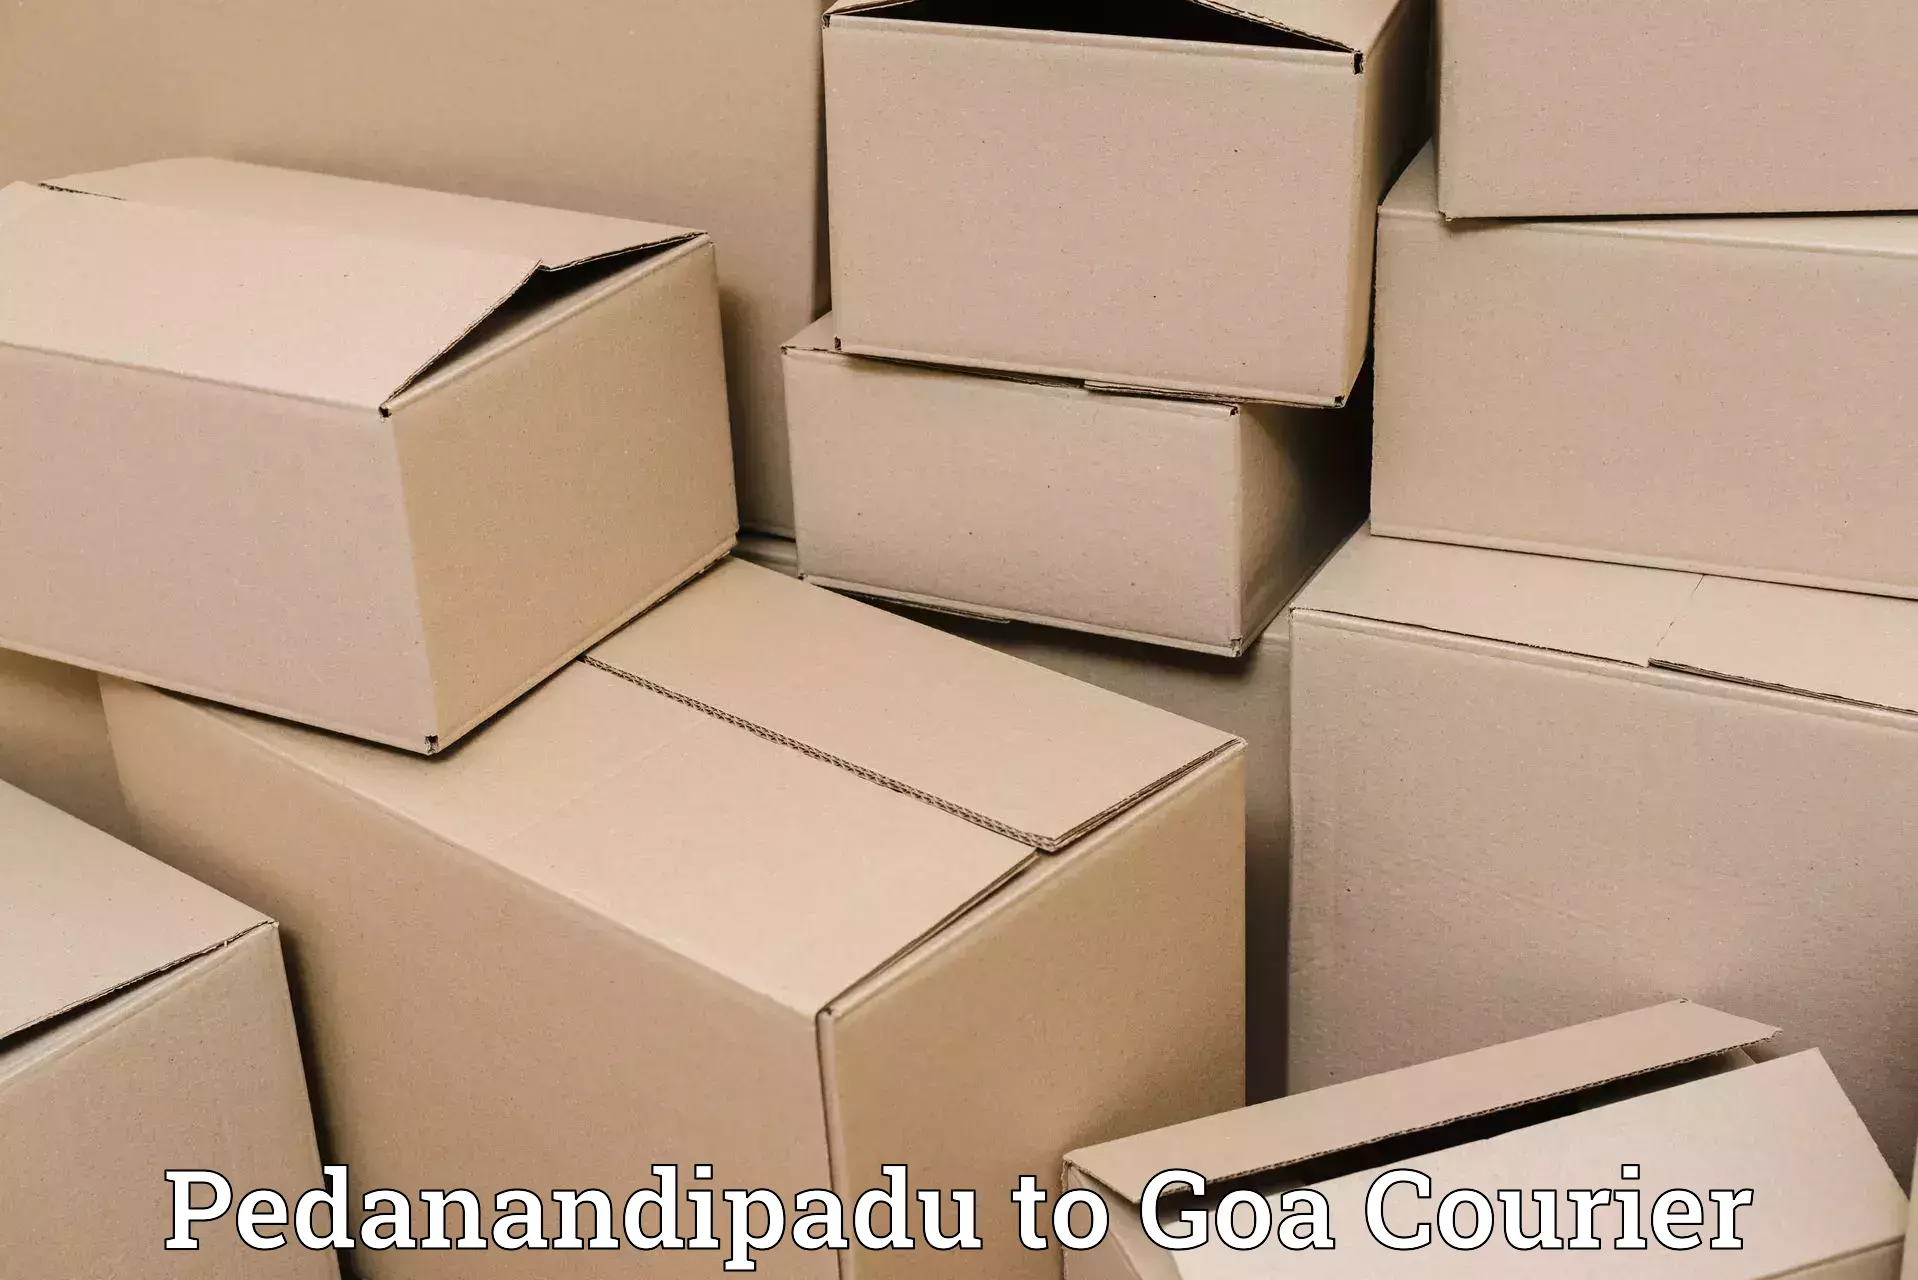 Logistics service provider Pedanandipadu to Vasco da Gama